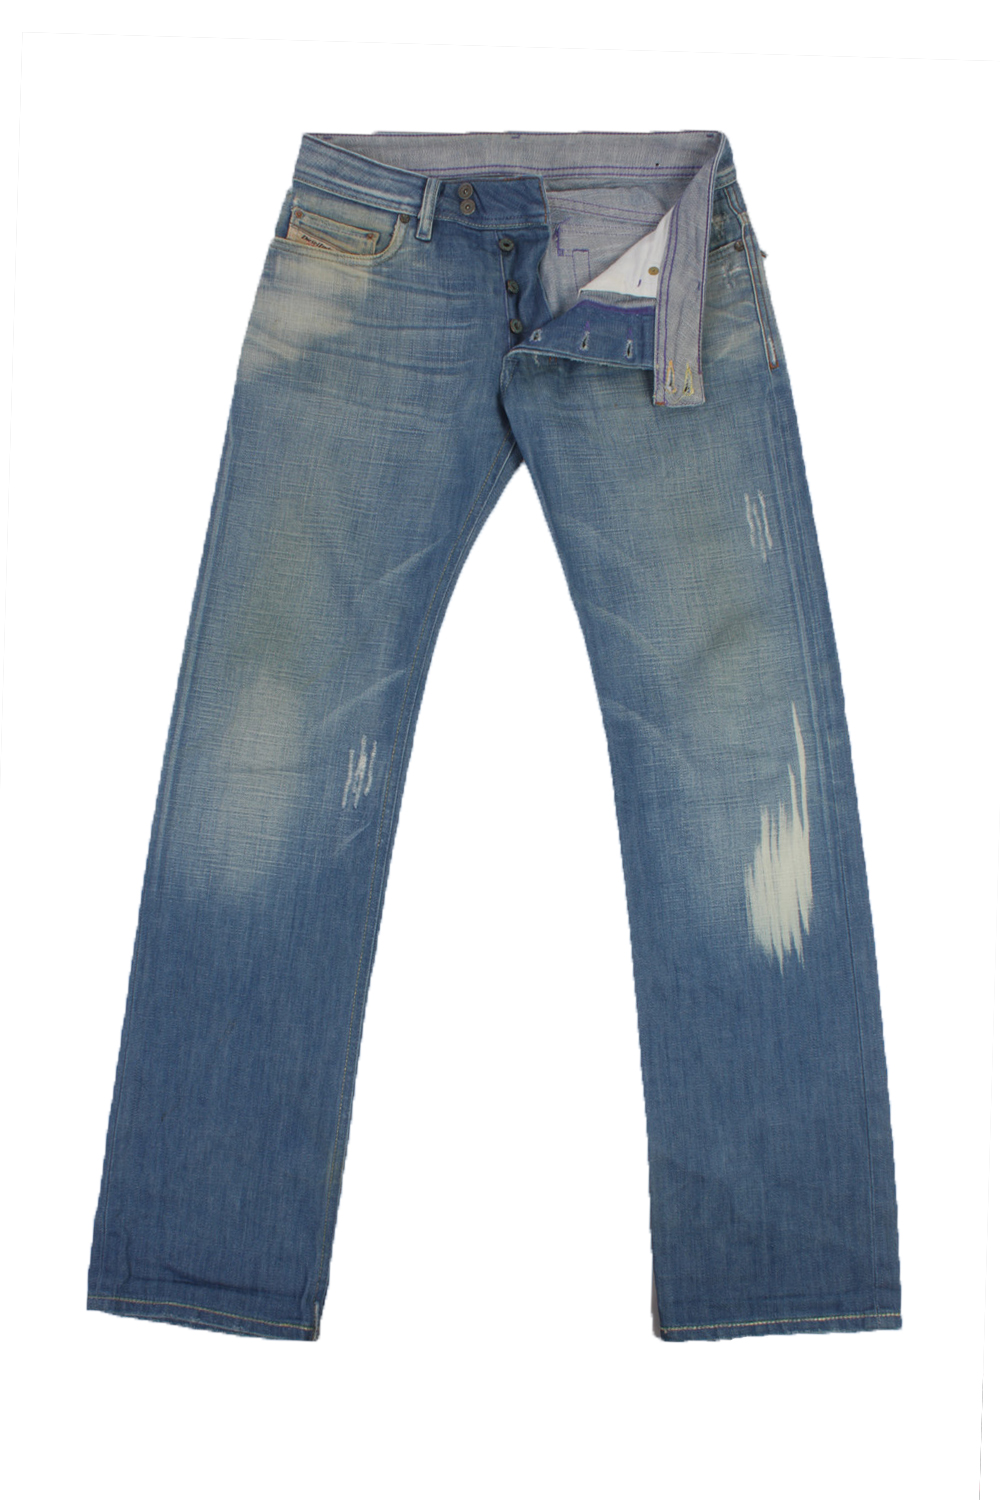 Diesel Jeans Women W29 L33 – Pepper Tree London